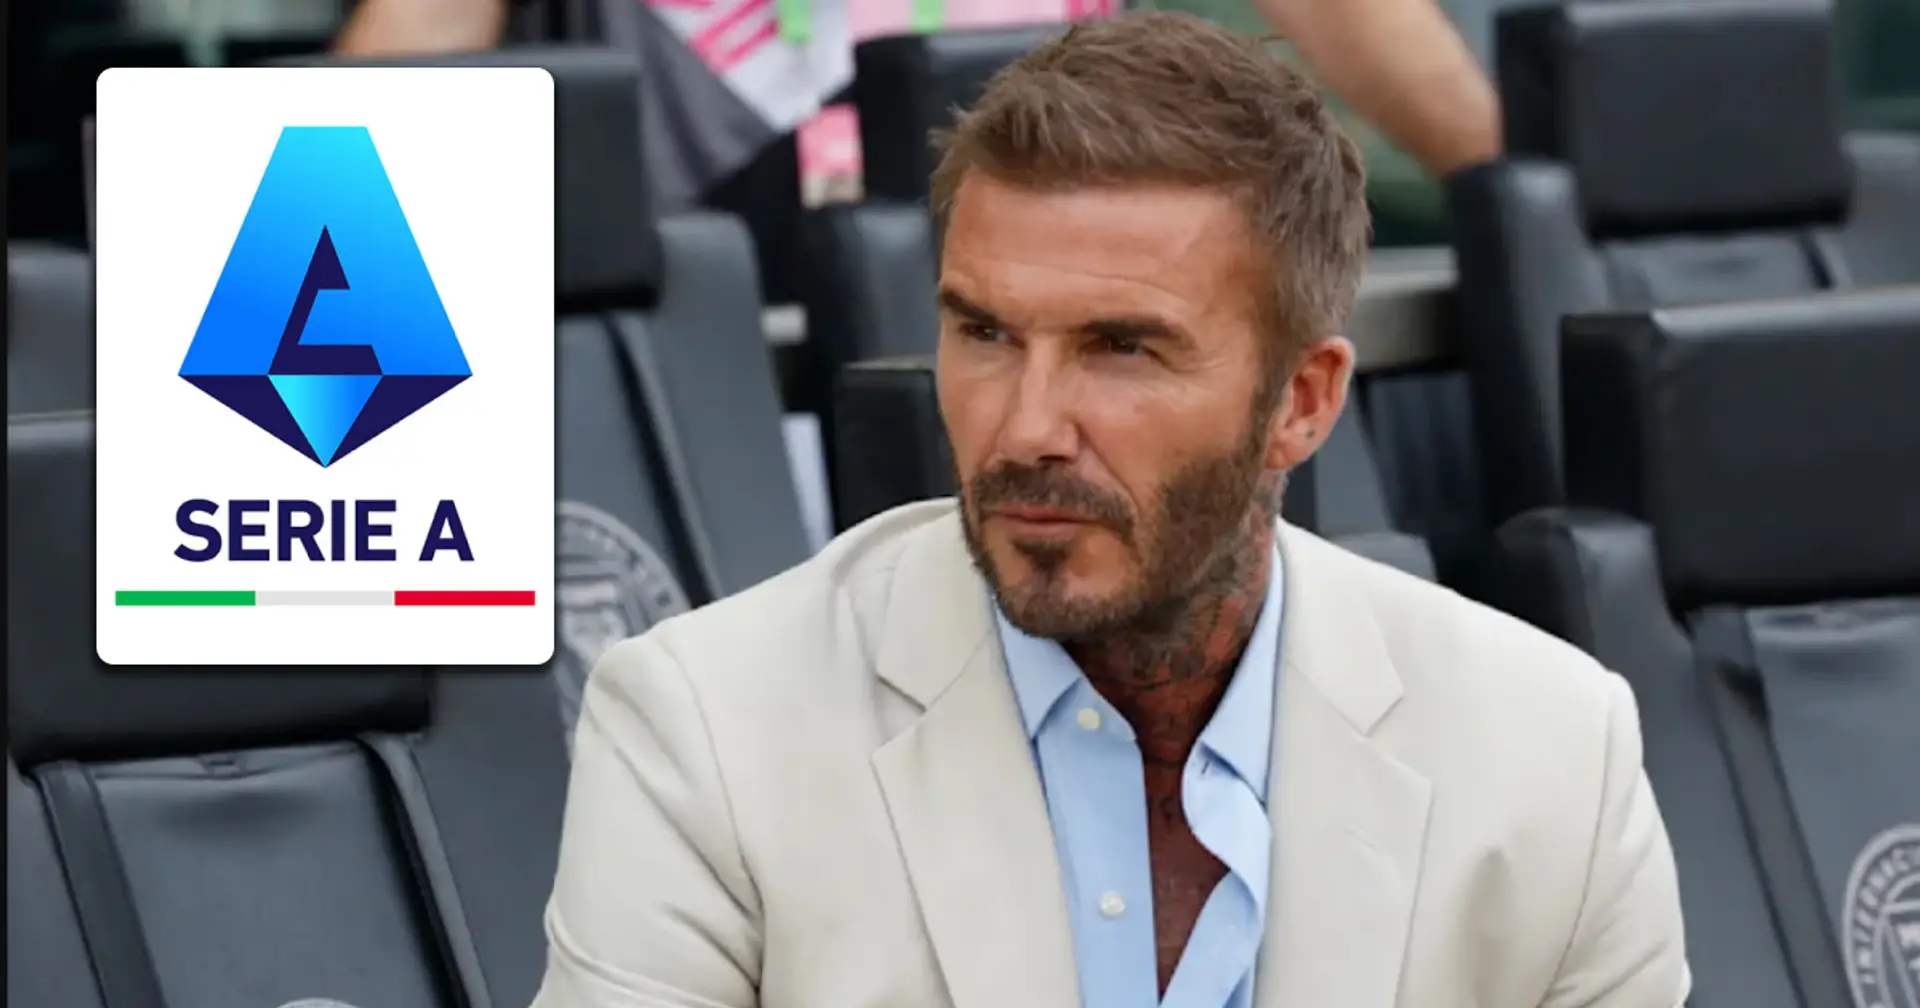 La "loi David Beckham" pourrait détruire certains clubs en Italie